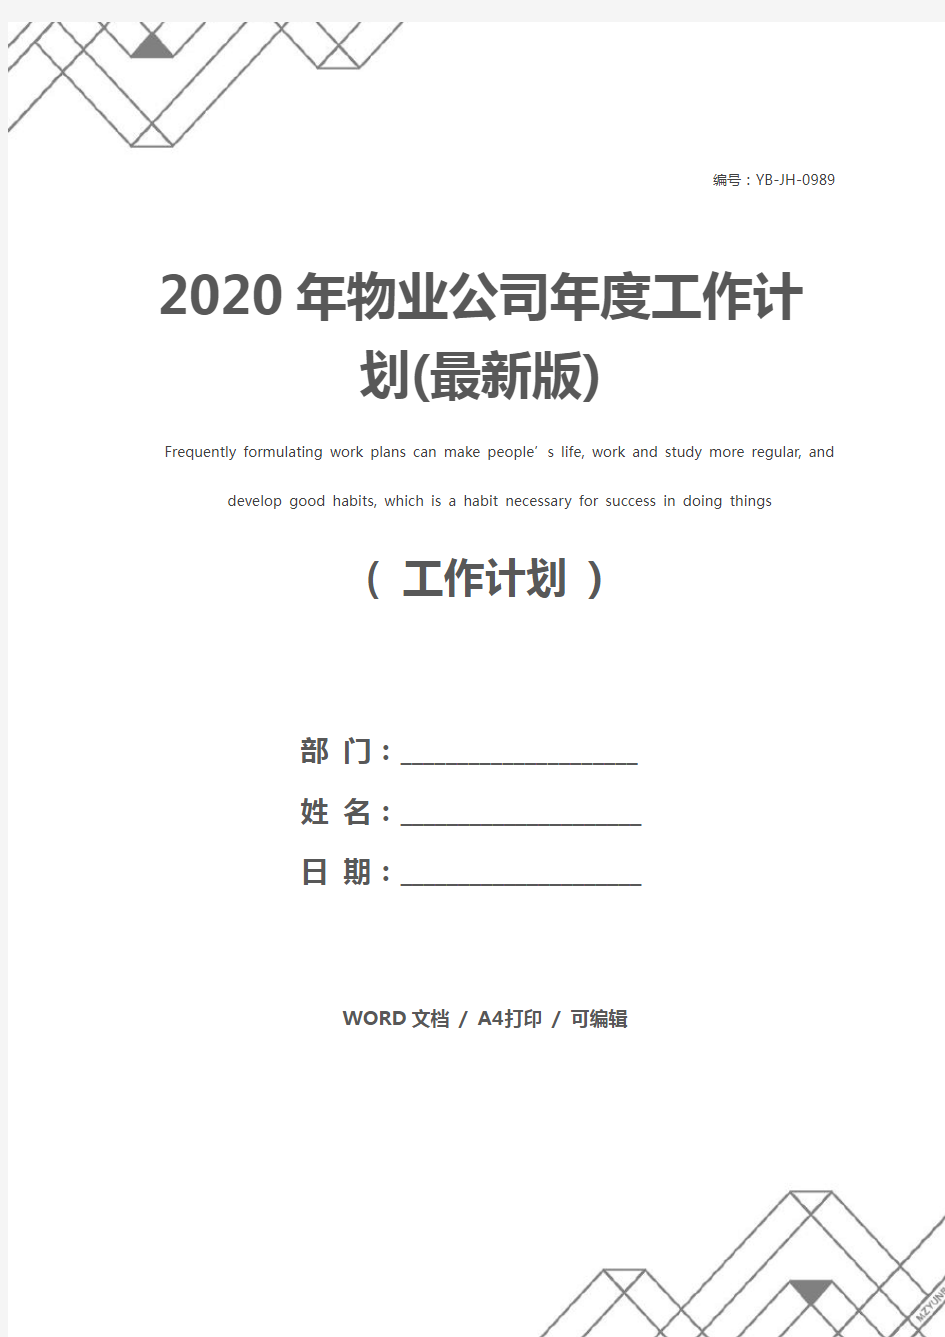 2020年物业公司年度工作计划(最新版)